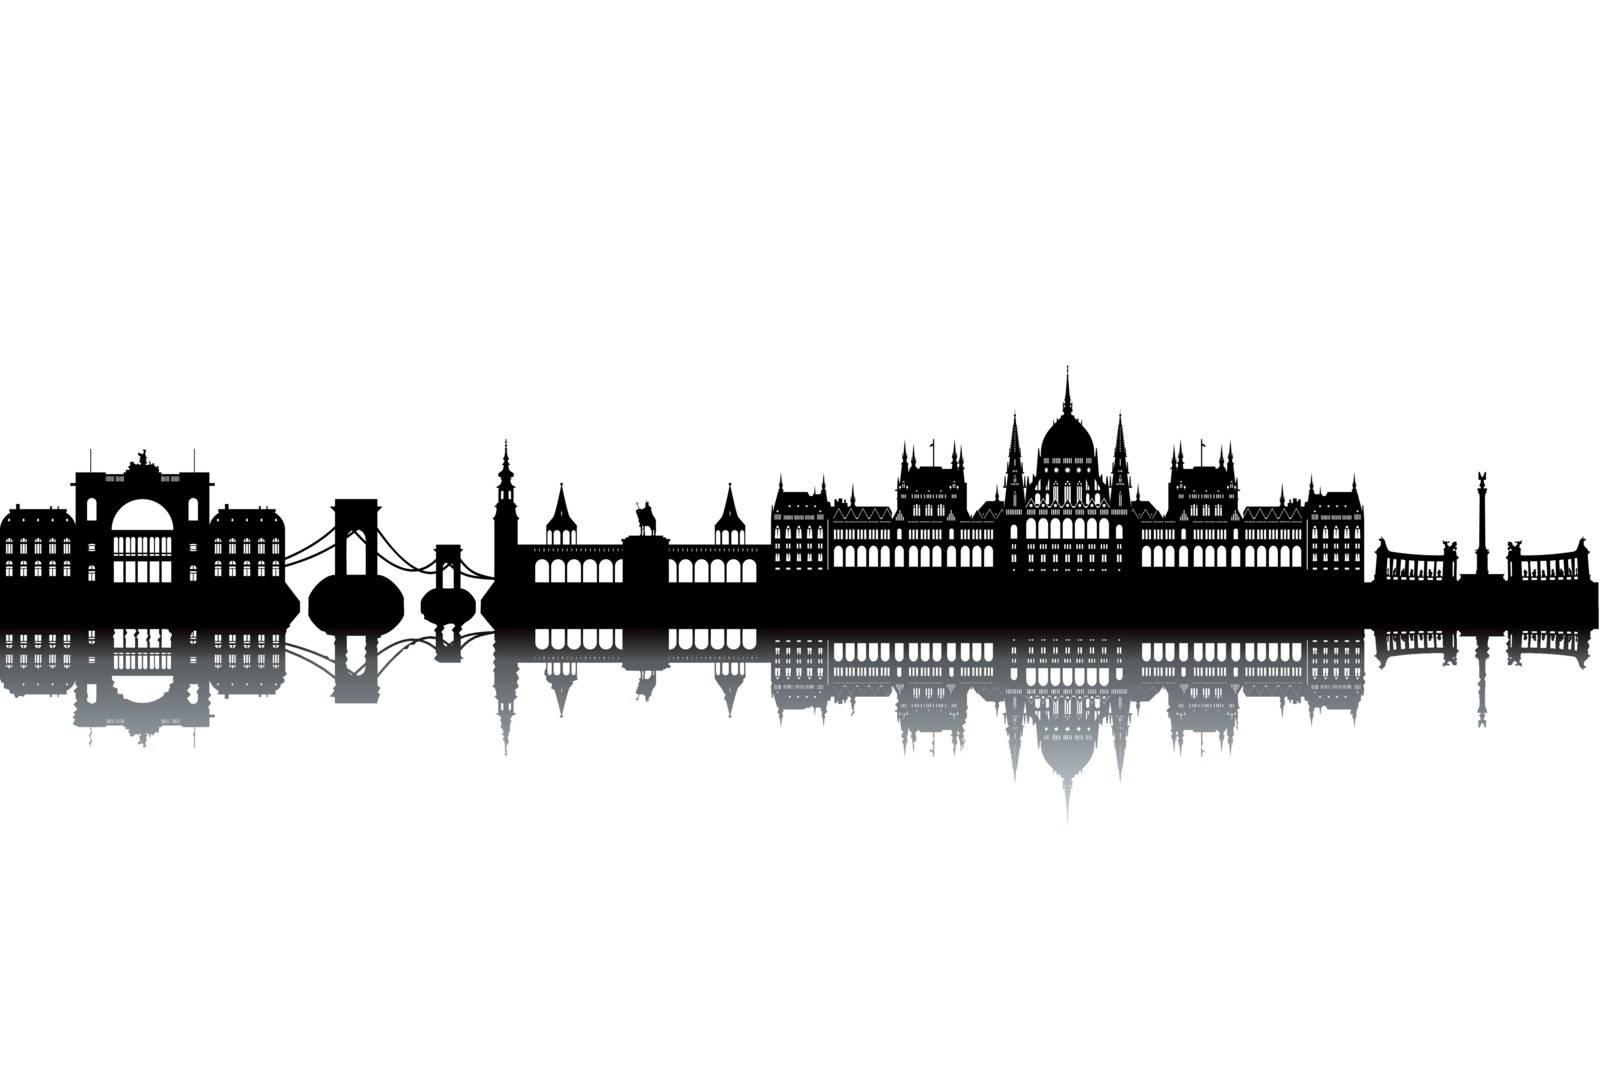 Budapest skyline - black and white vector illustration